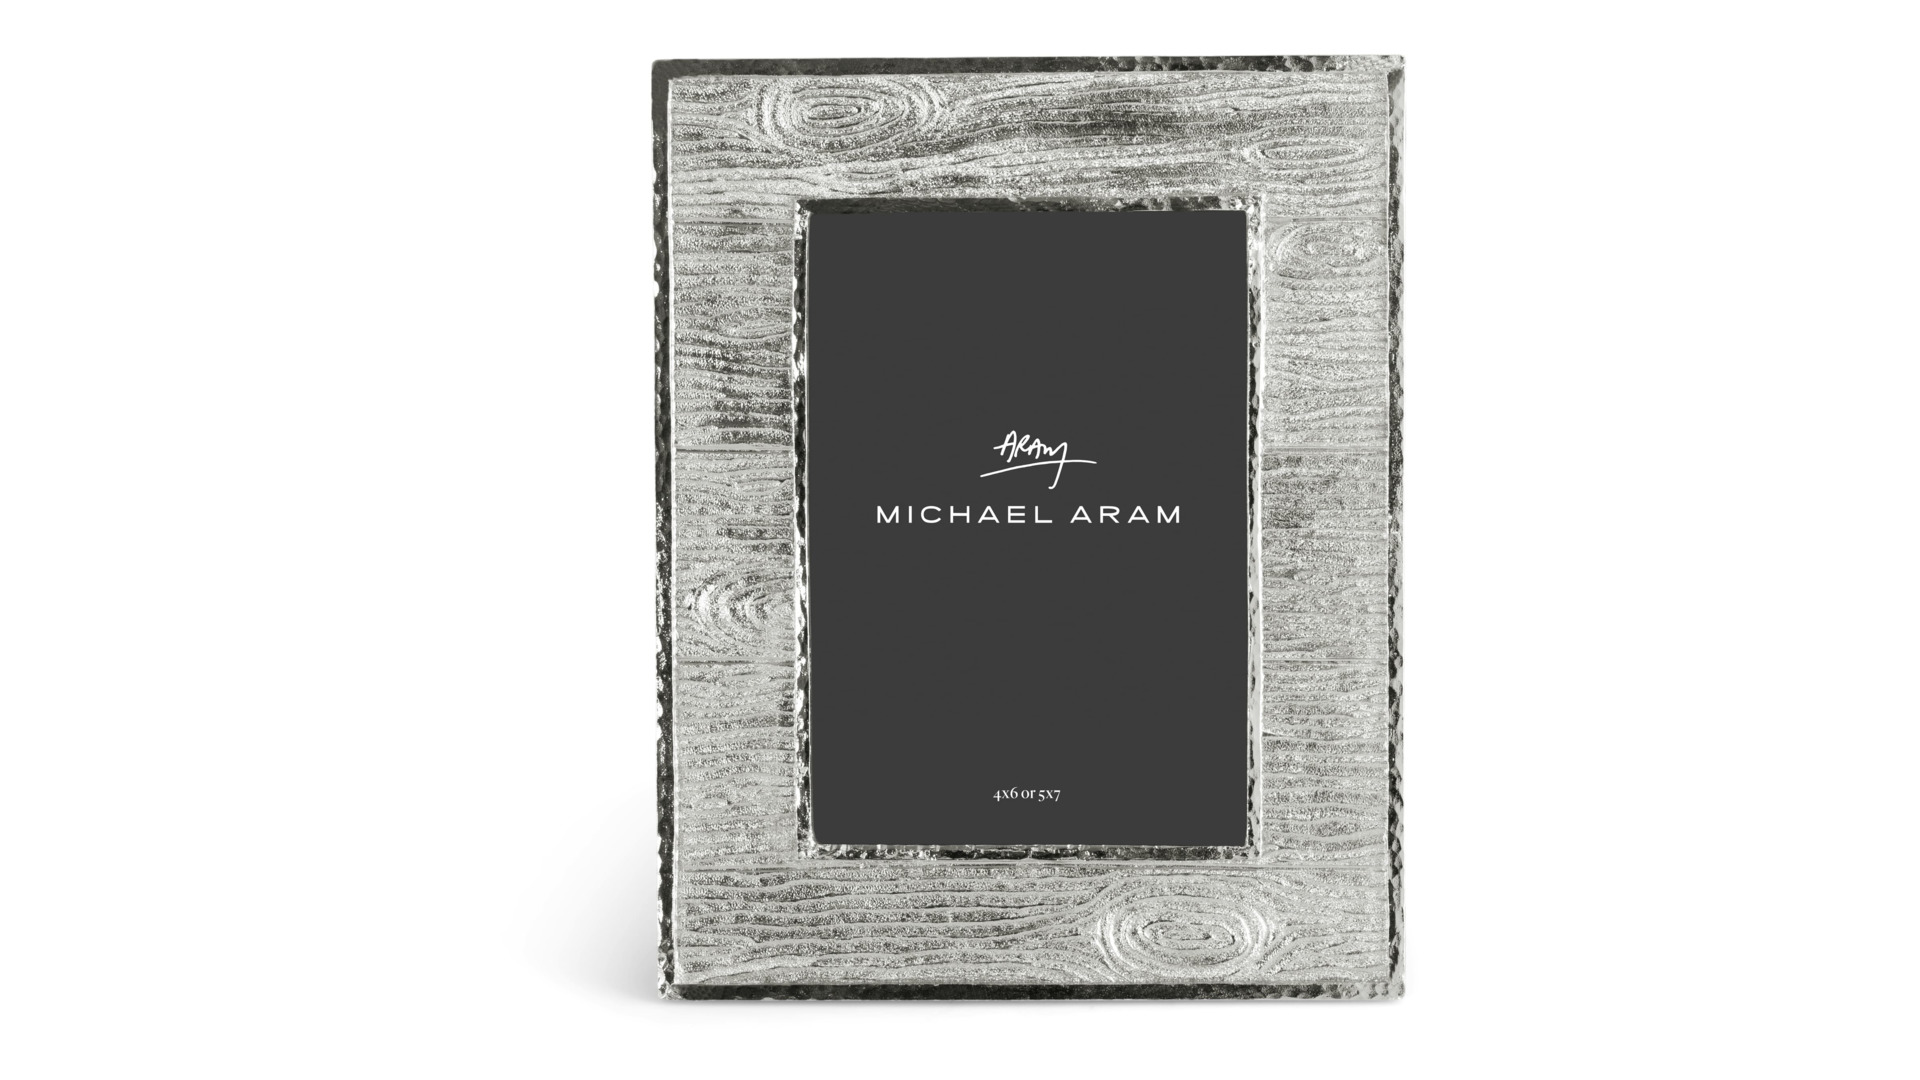 Рамка для фото Michael Aram Плющ и дуб 13х18 см, сталь нержавеющая